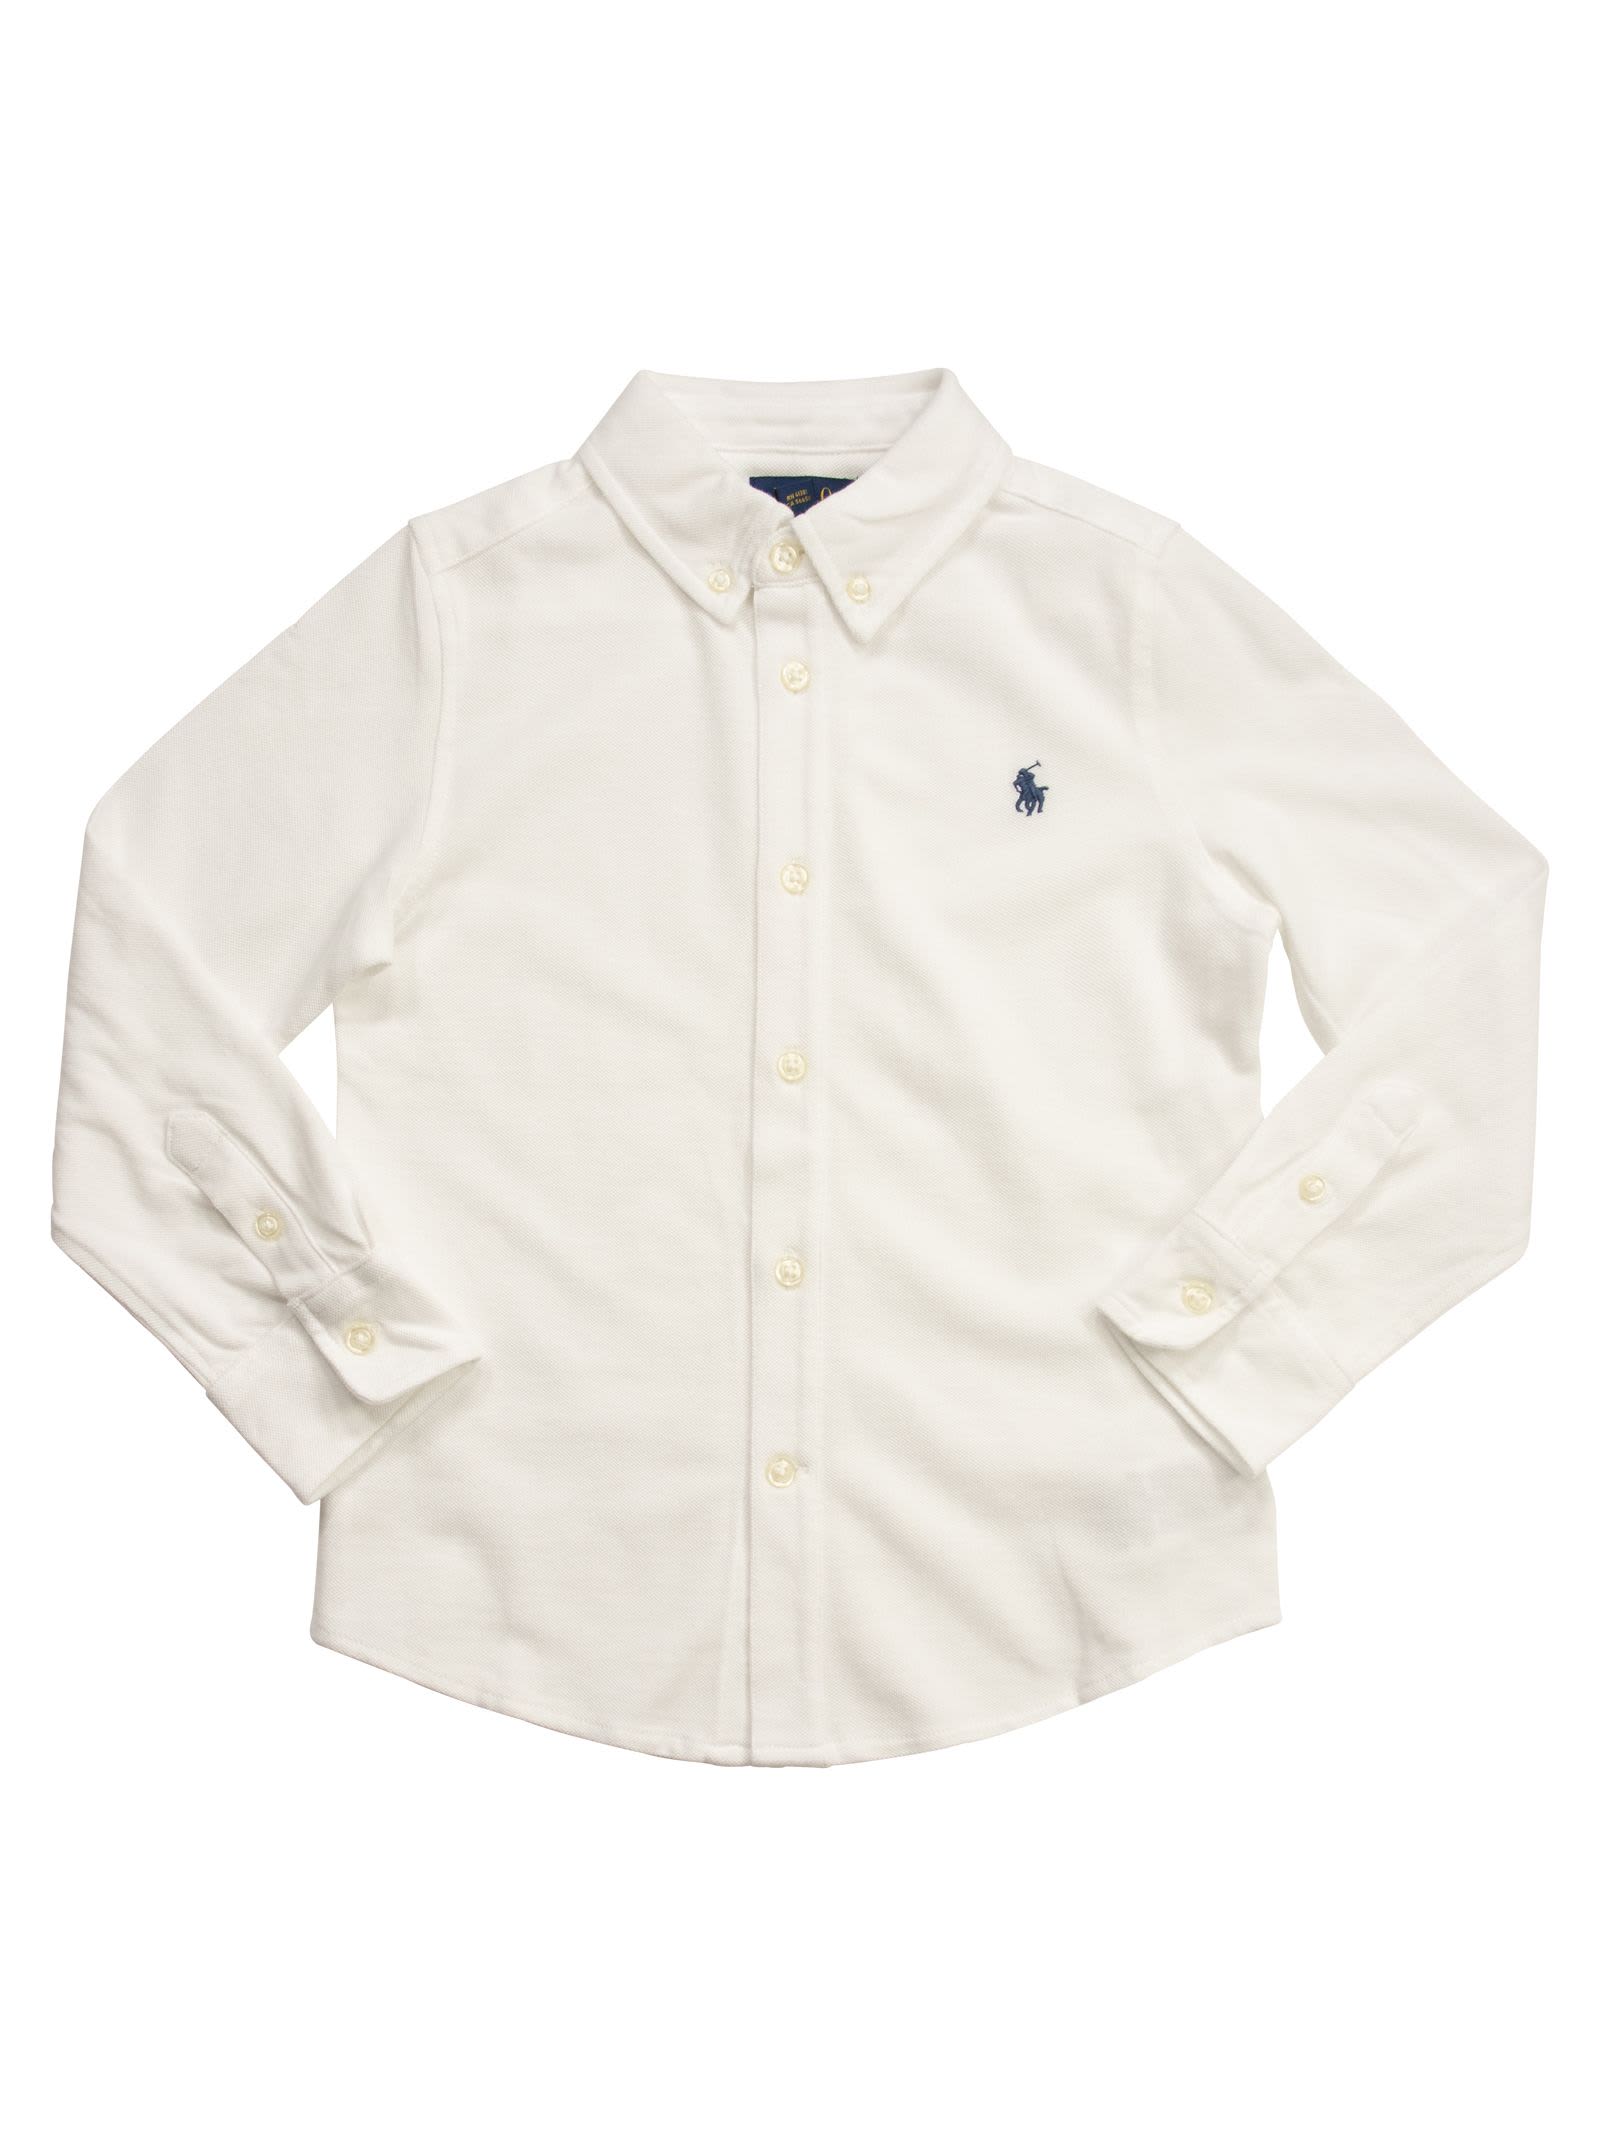 Polo Ralph Lauren Kids' Ultralight Cotton Pique Shirt In White